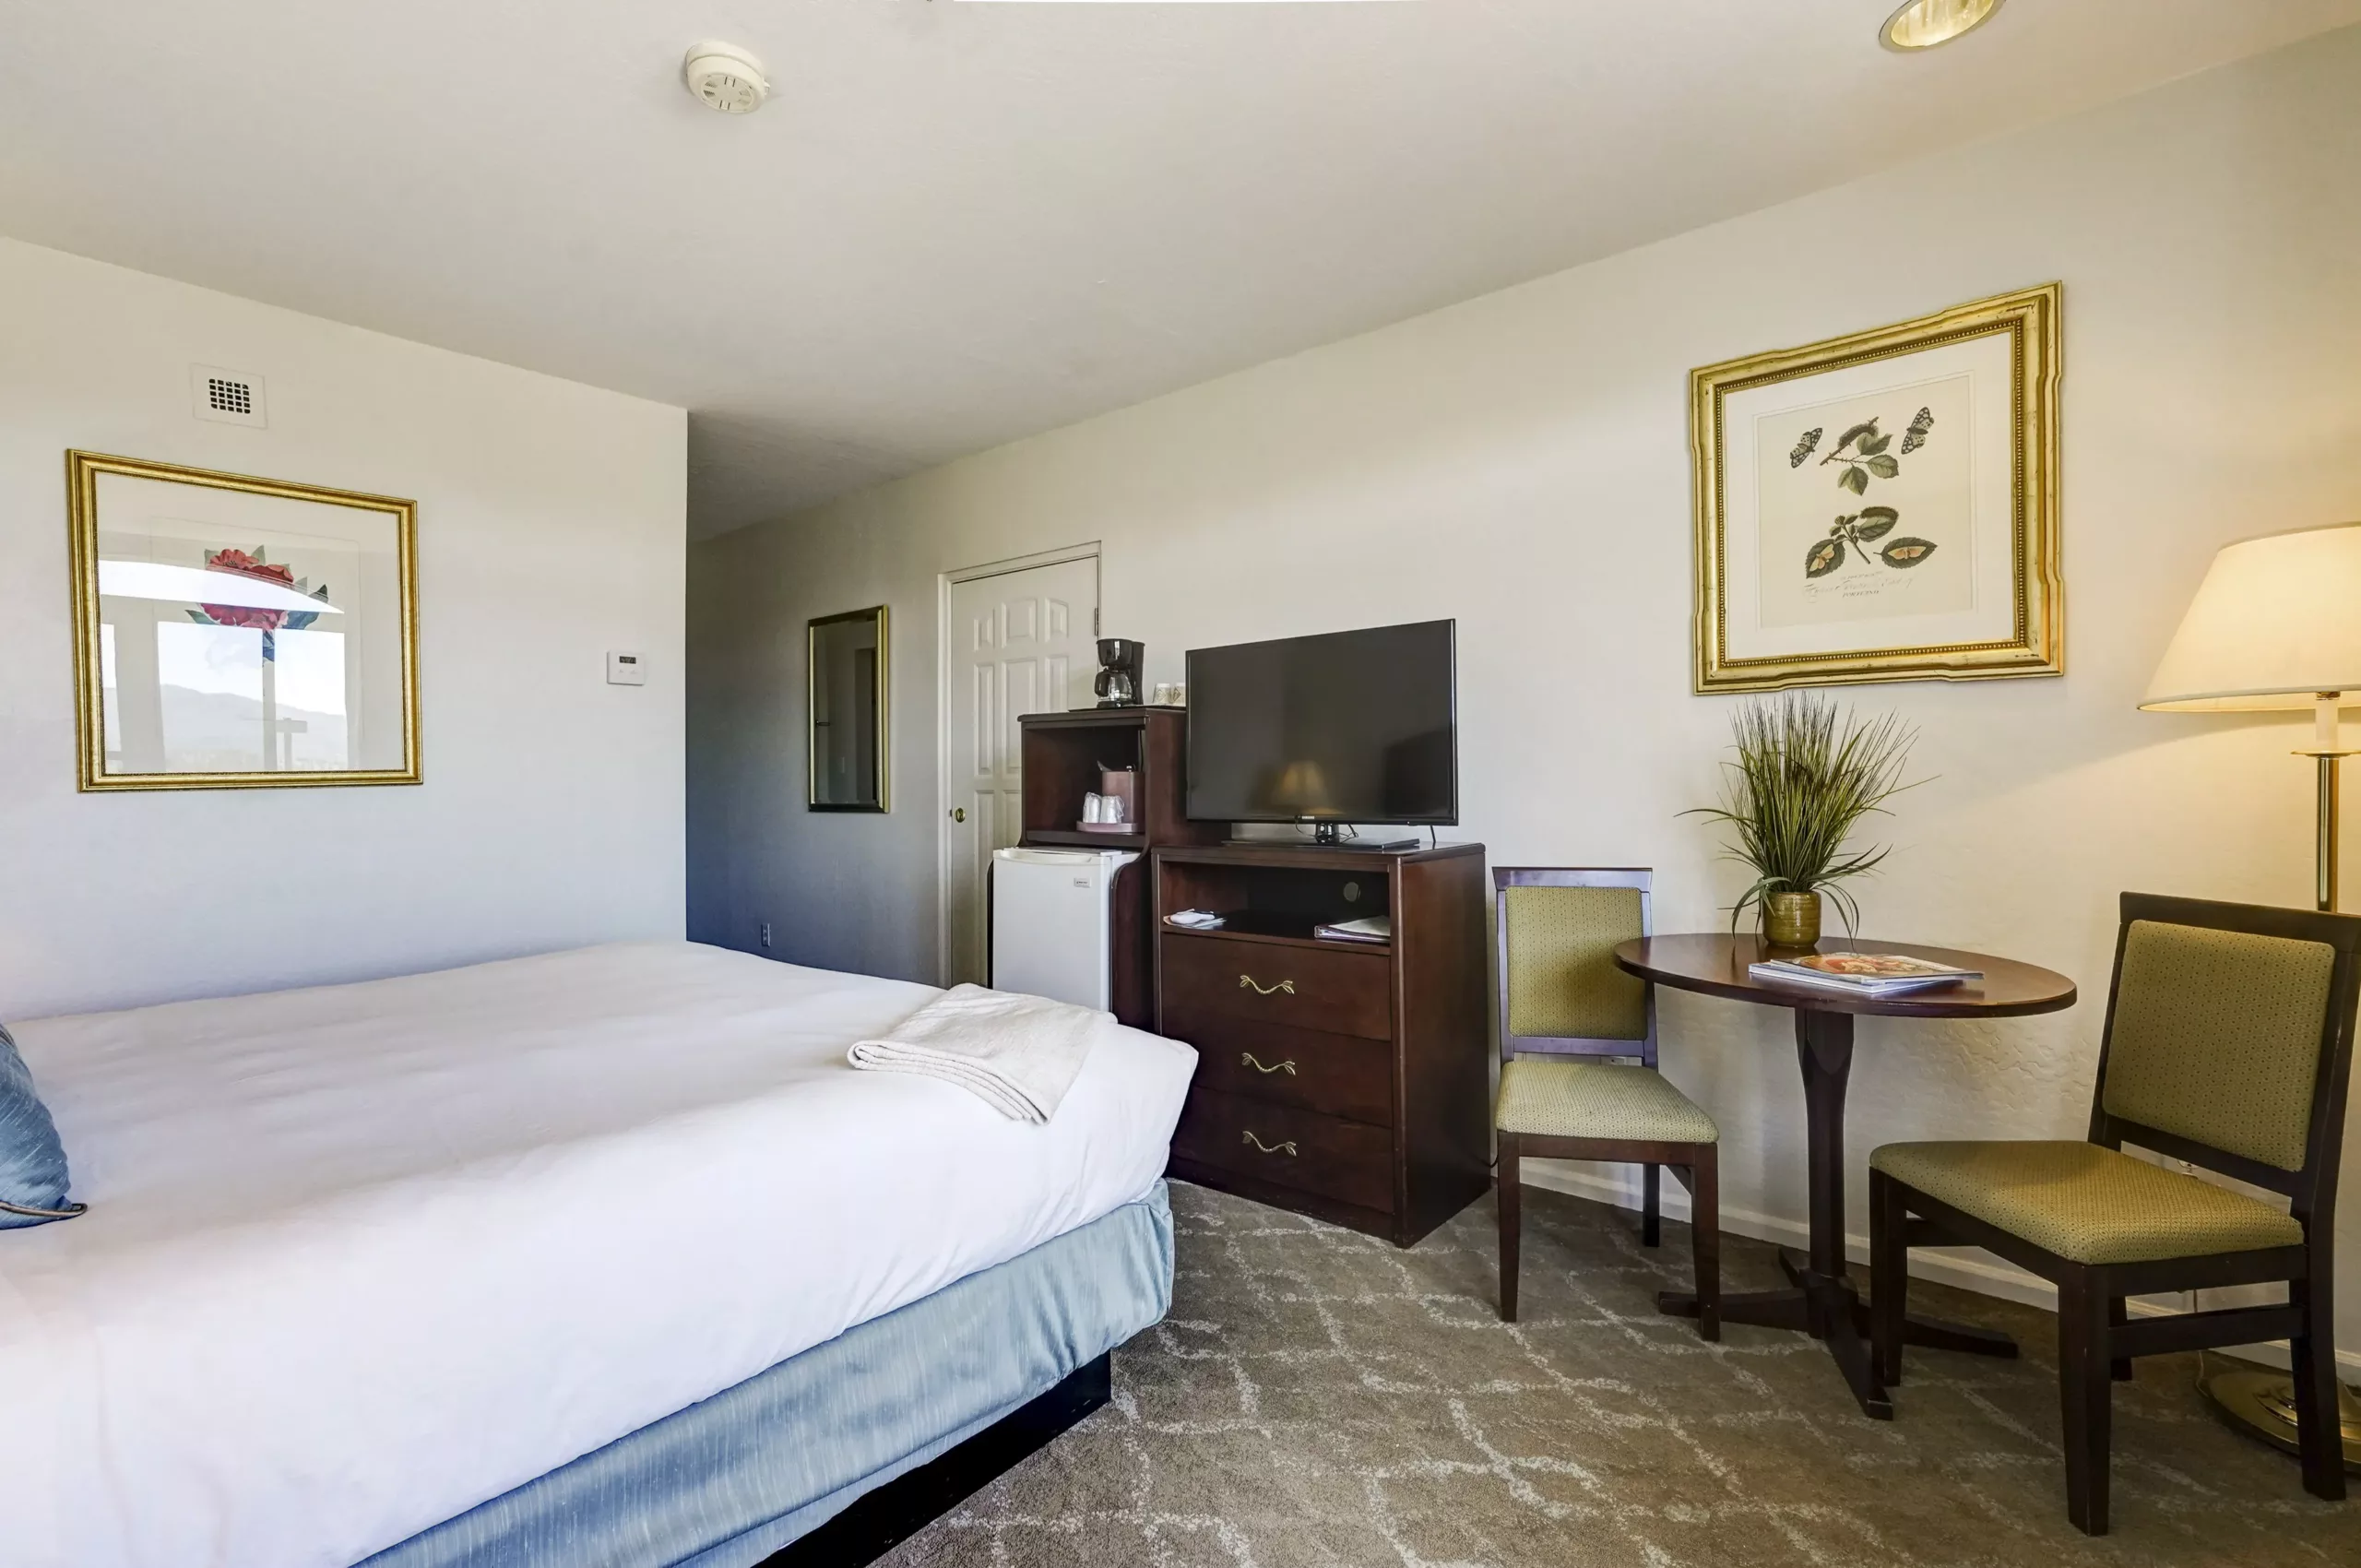 Standard Room at Forest Villas Hotel in Prescott AZ